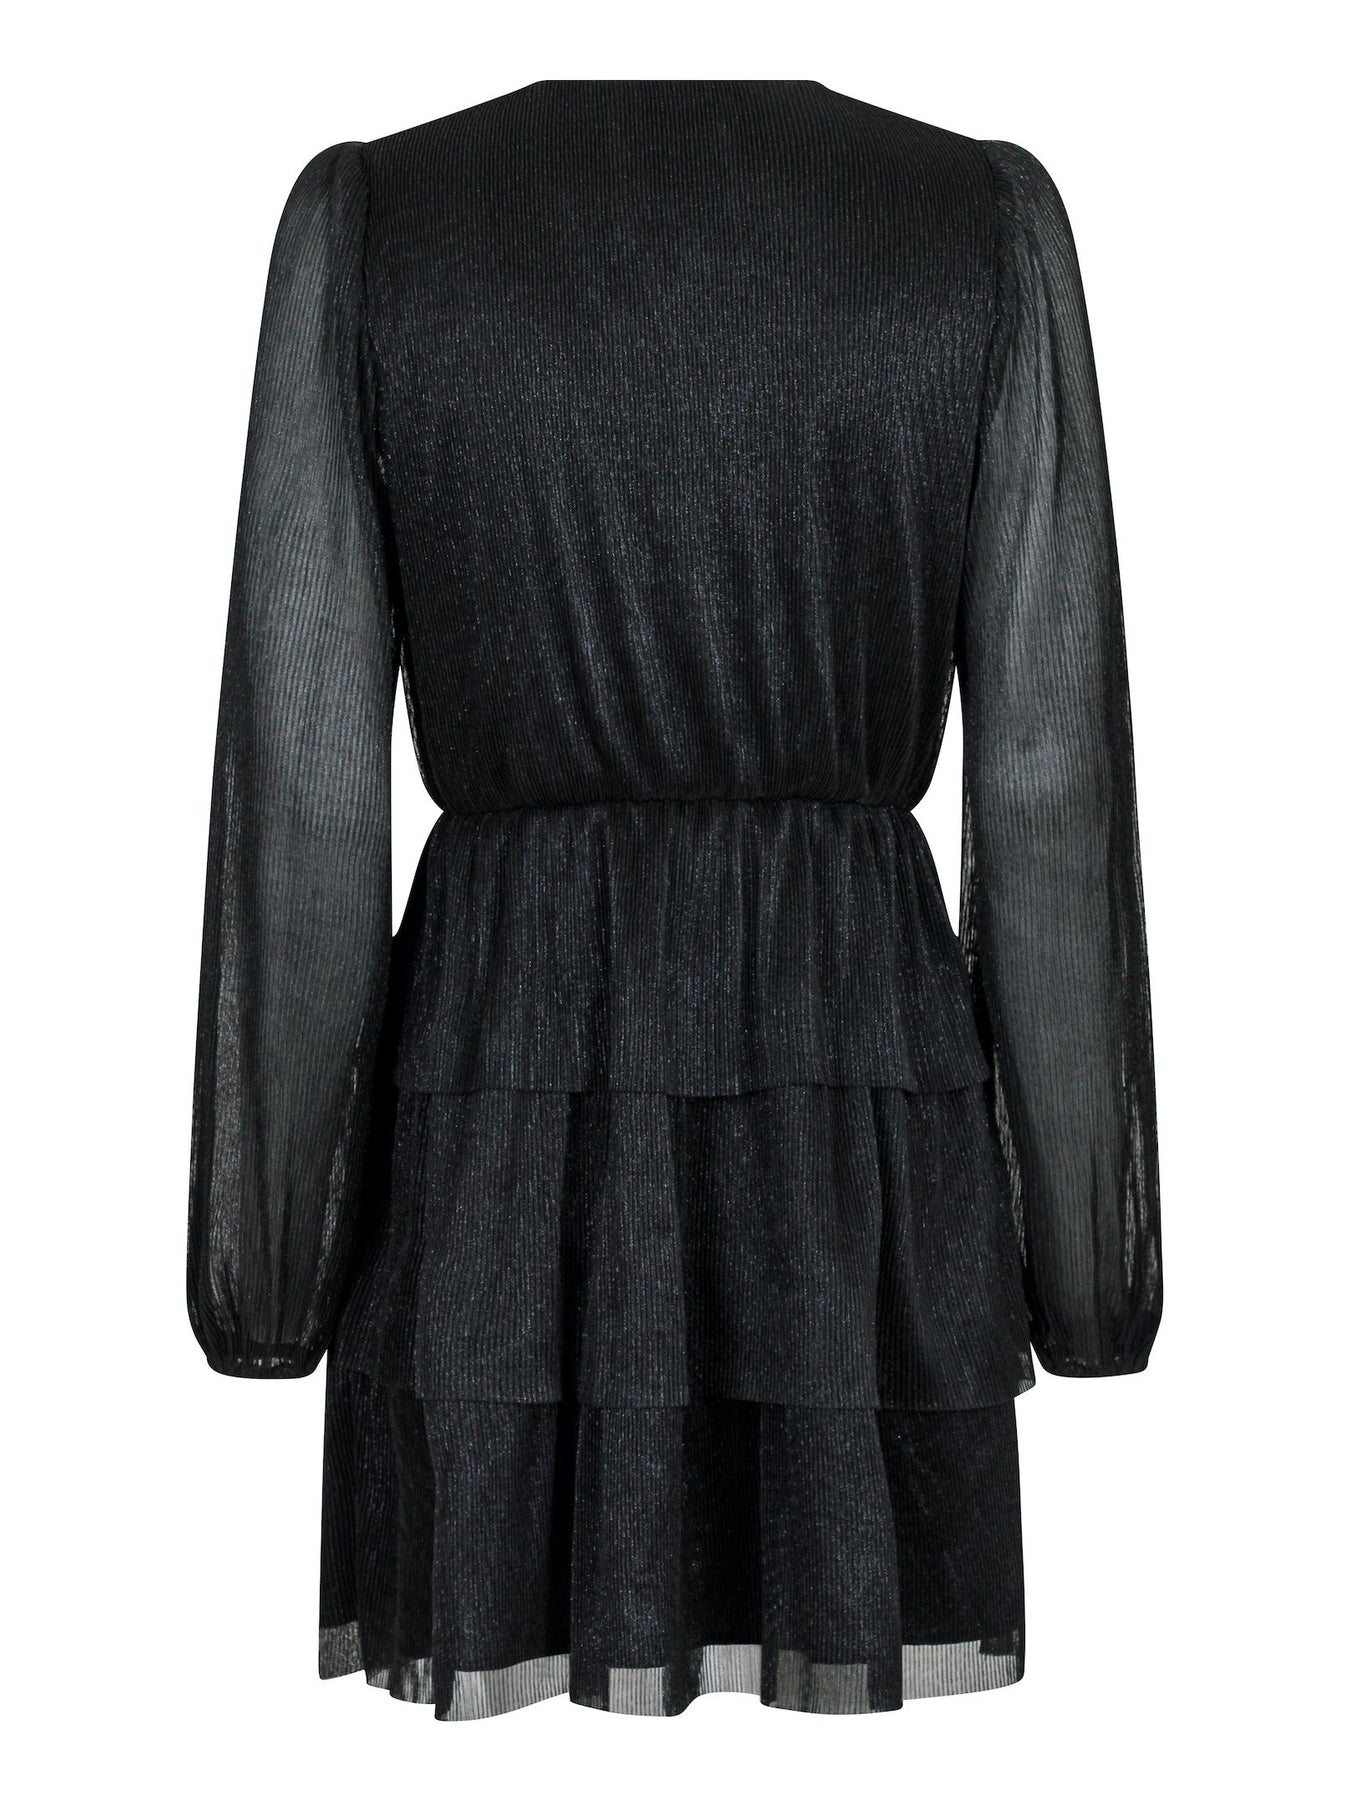 Nene Glitz Dress - Black